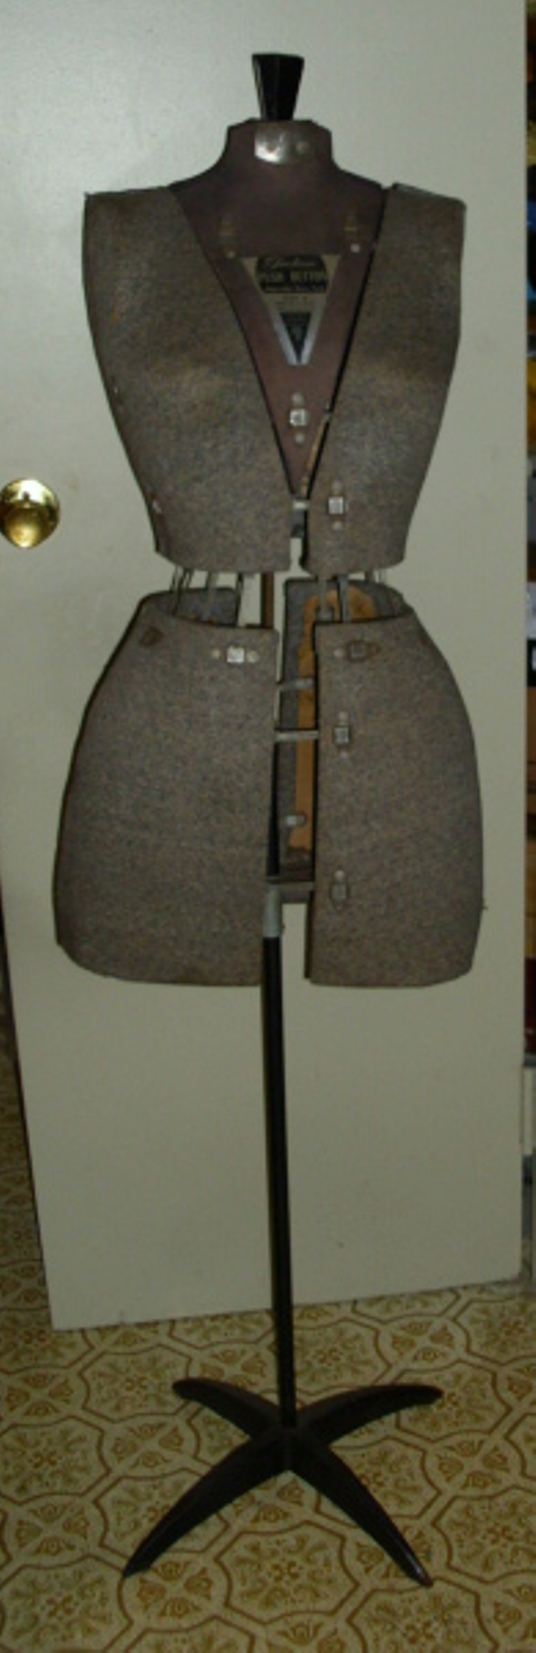 Antique Fairloom Push Button Size A  Roebuck Dress Form Mannequin Vintage